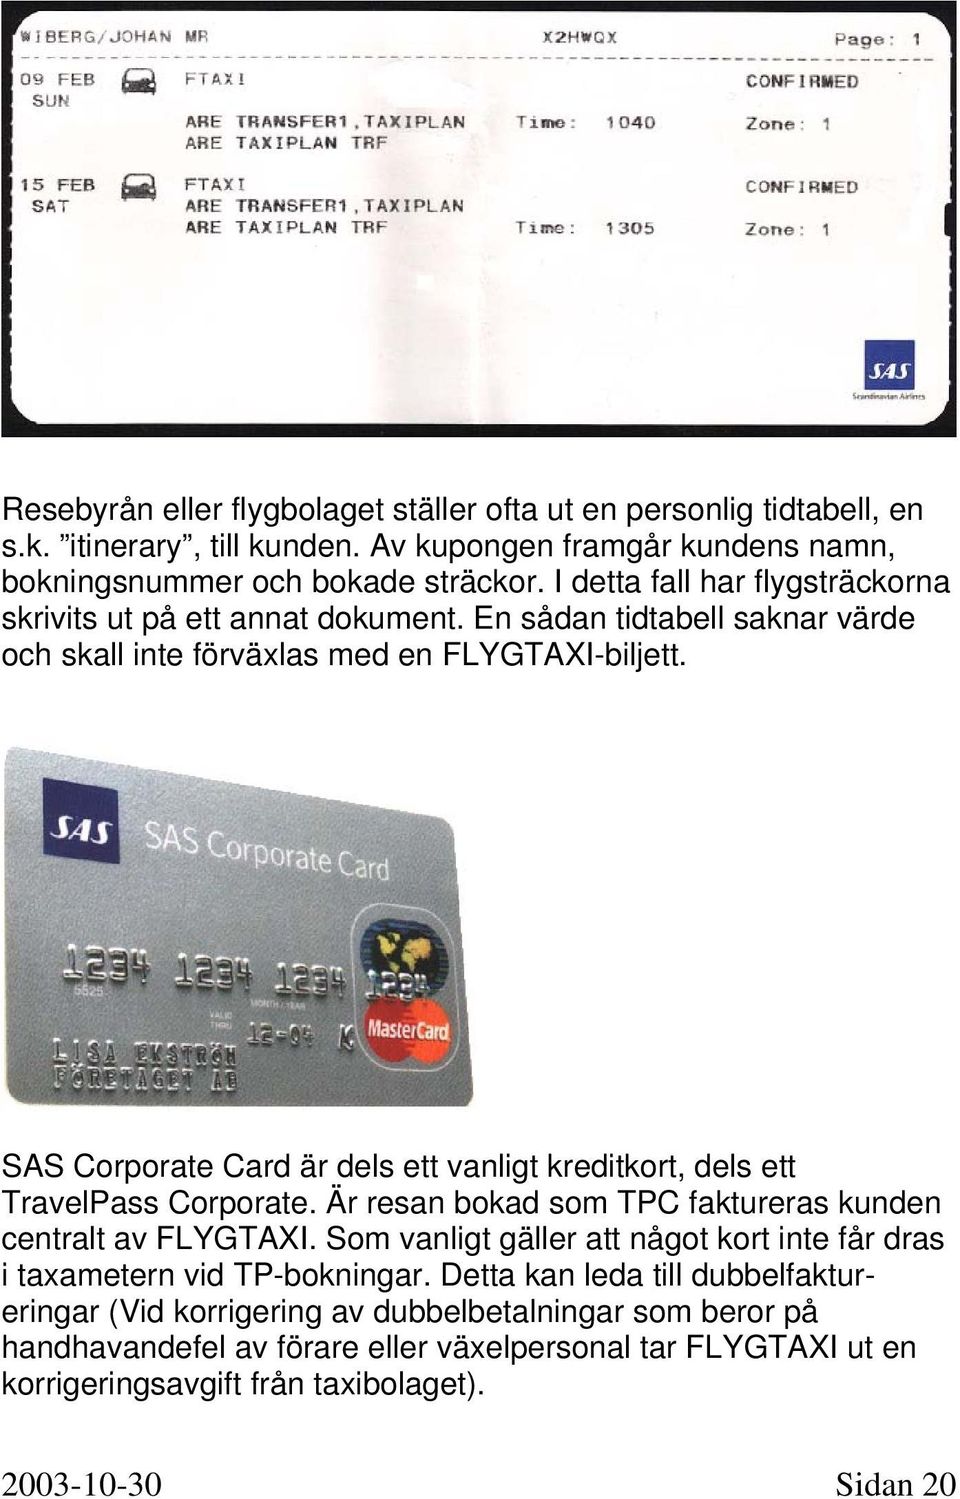 SAS Corporate Card är dels ett vanligt kreditkort, dels ett TravelPass Corporate. Är resan bokad som TPC faktureras kunden centralt av FLYGTAXI.